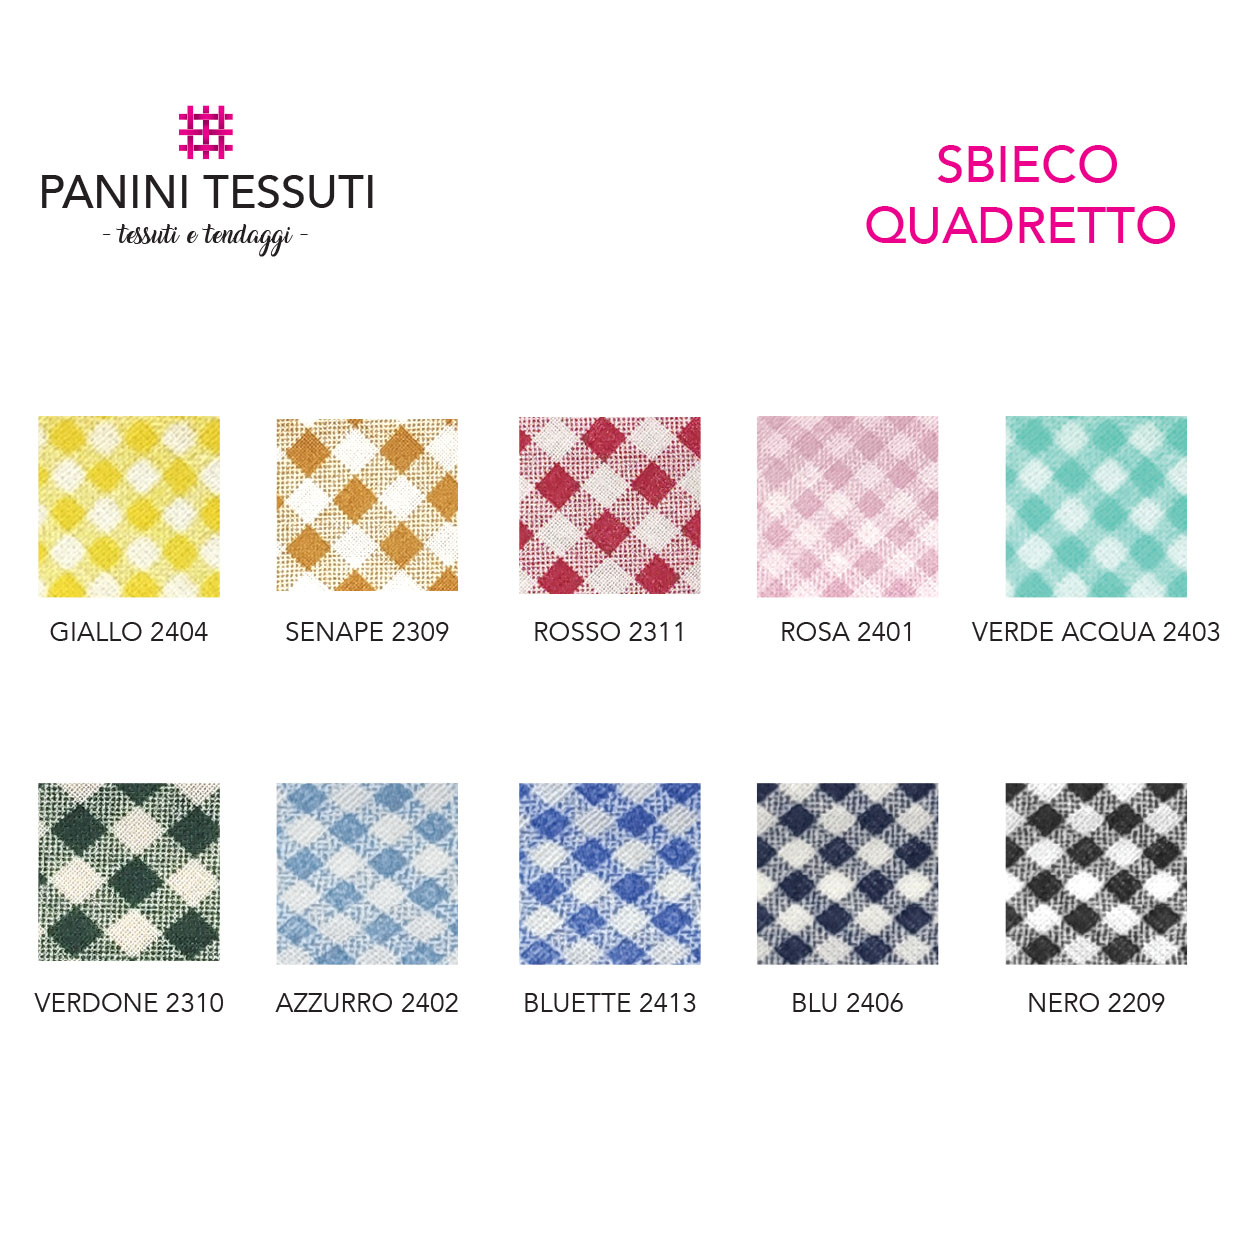 Tabella-Colore-Sbieco-quadretto